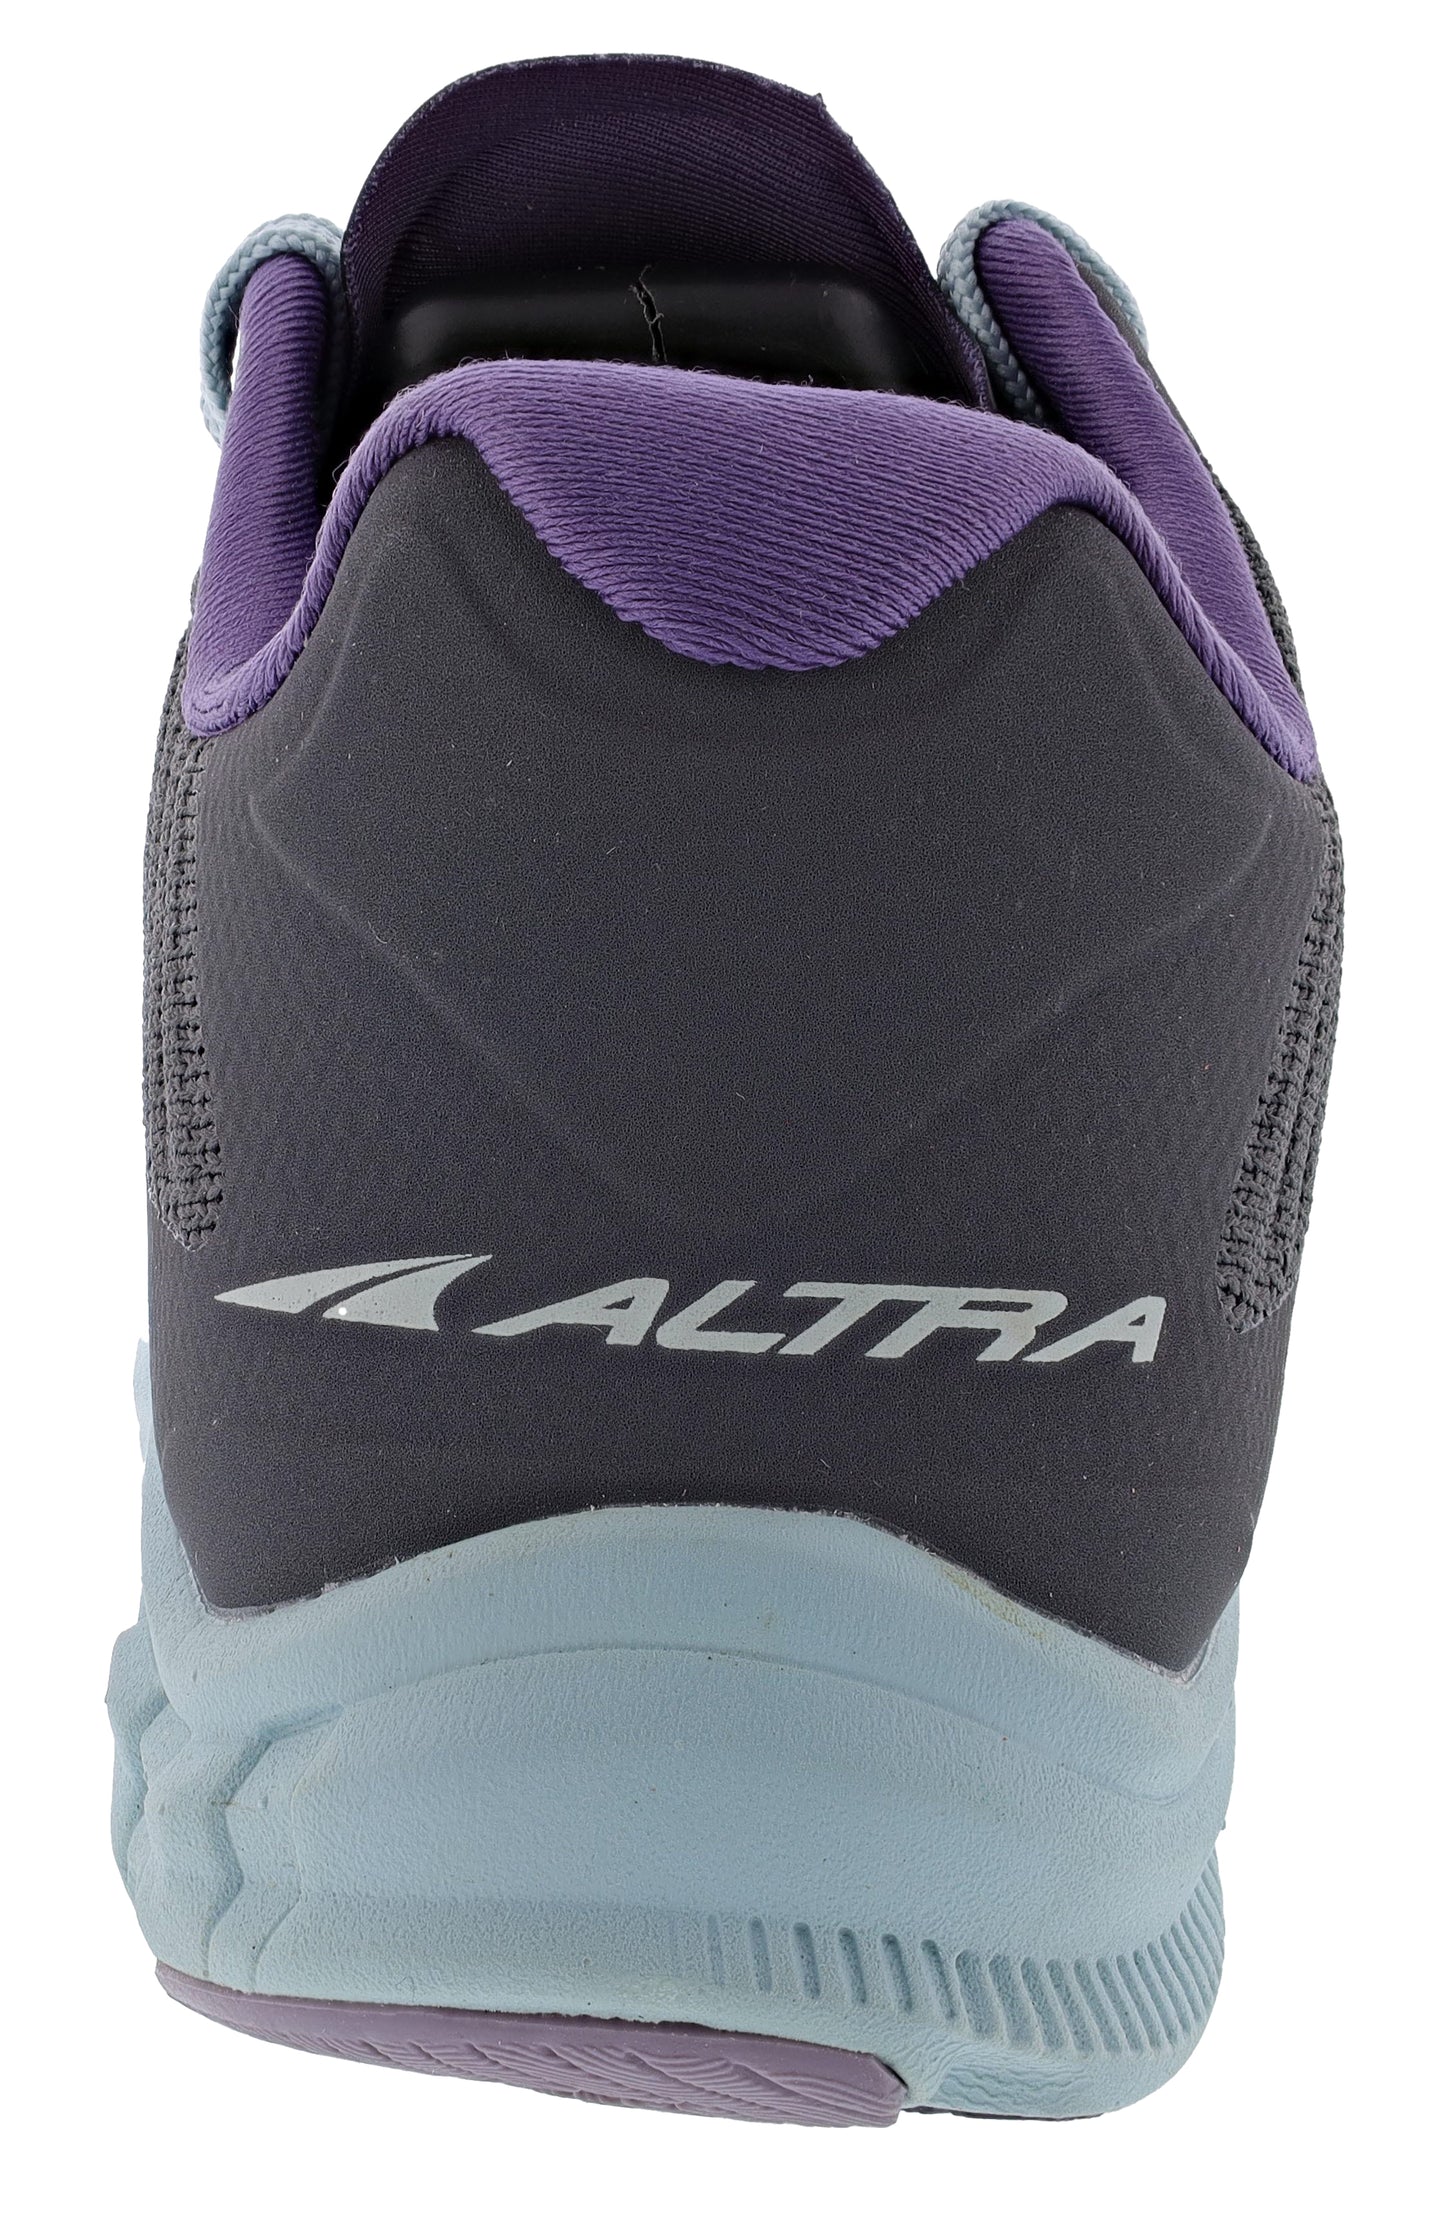 
                  
                    Altra Women’s Running Lightweight Platform Shoes Torin 4.5 Plush
                  
                